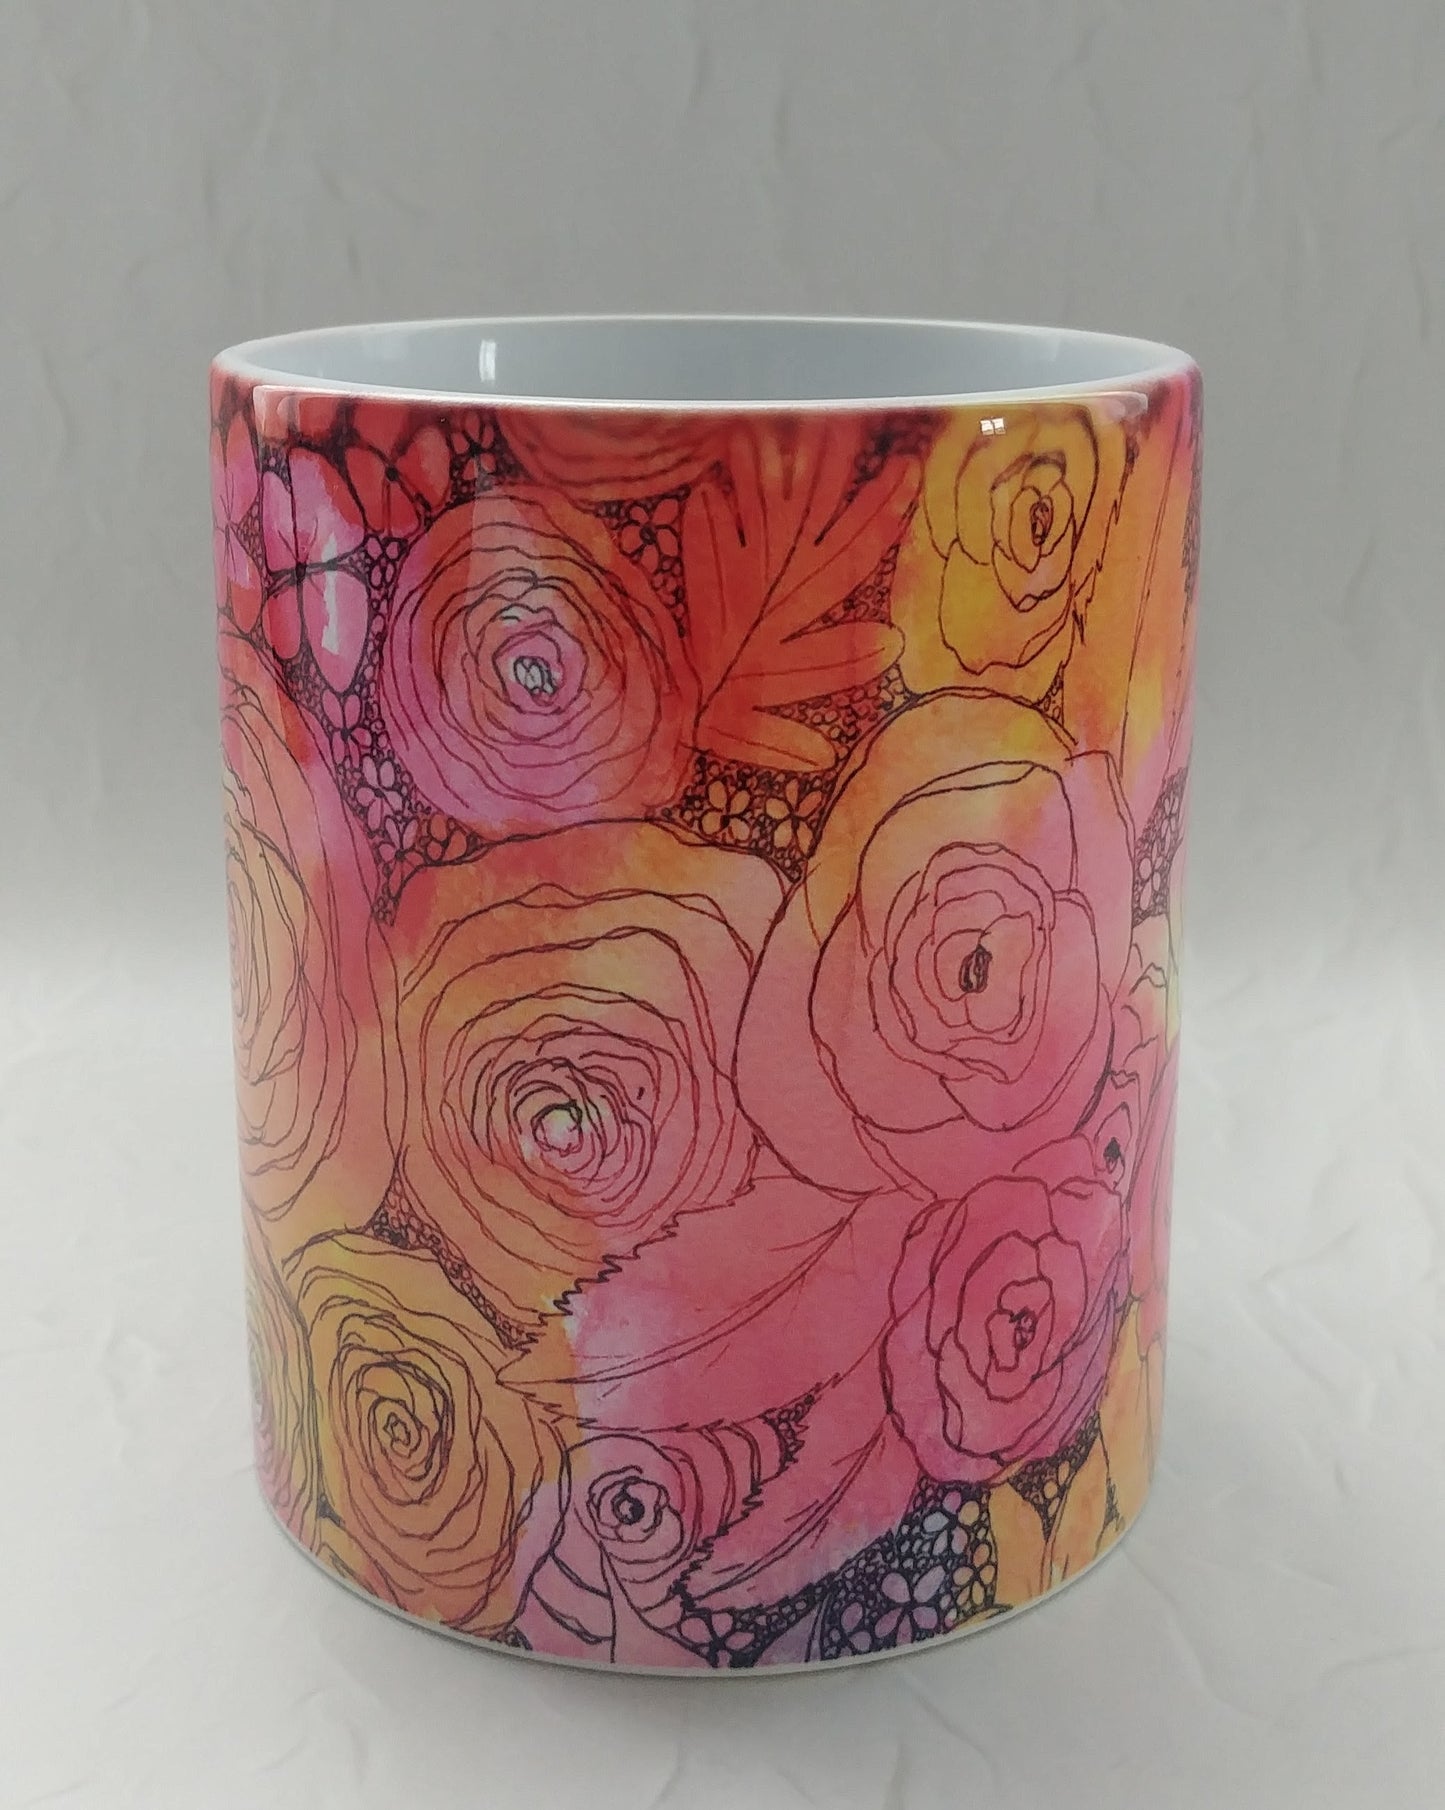 Inked Flowers - 11oz mug